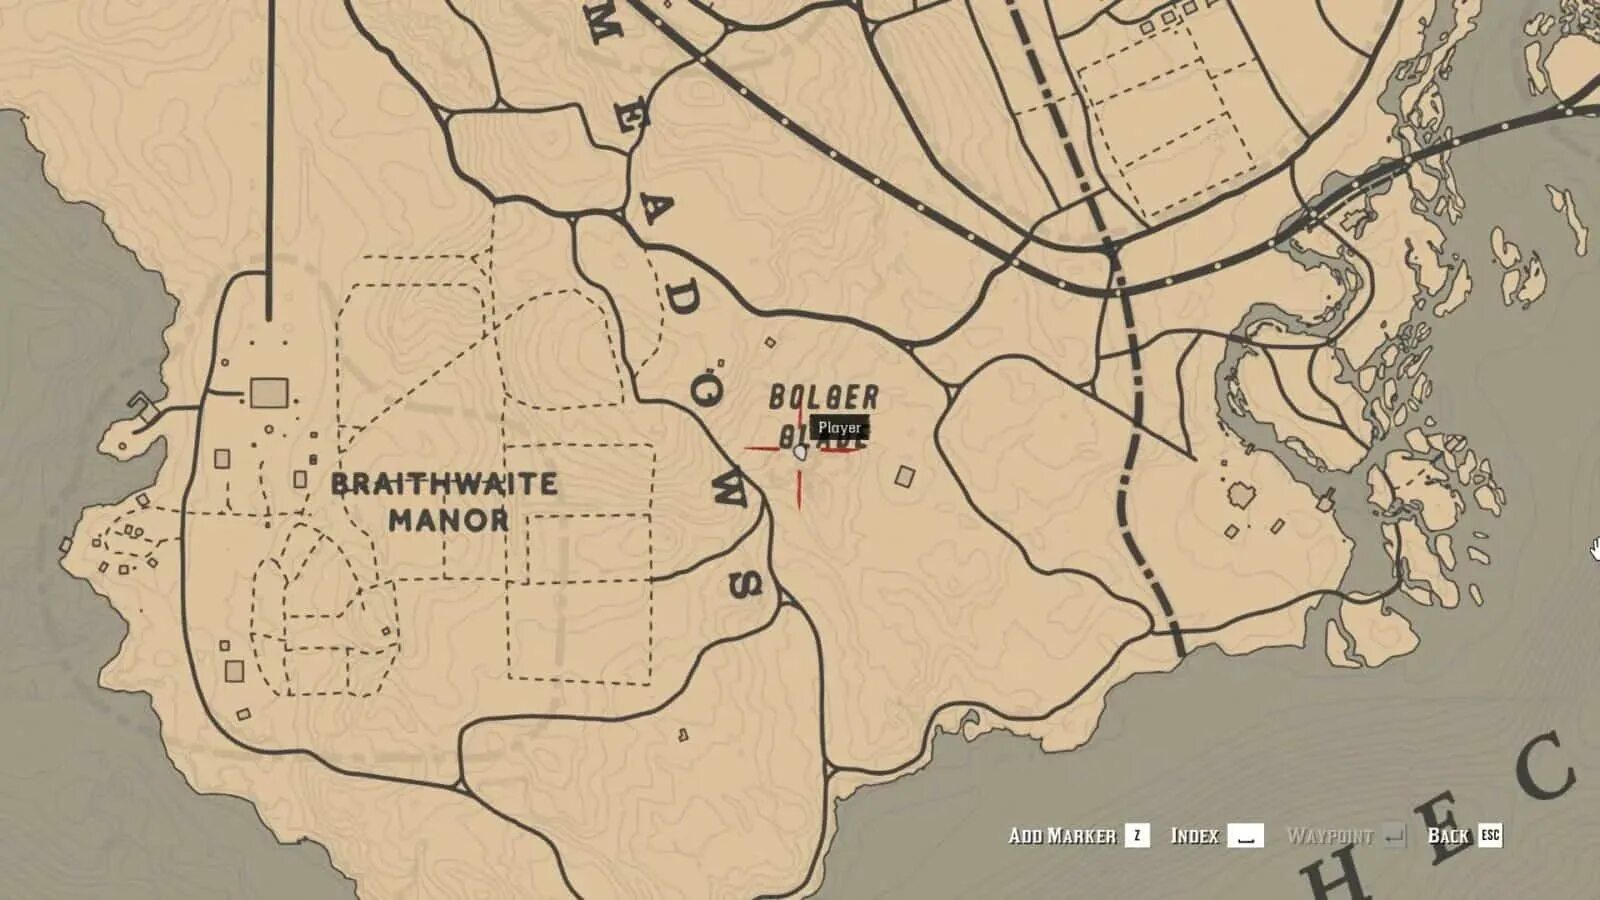 Braithwaite Manor rdr 2. Rdr 2 Роудс на карте. Braithwaite rdr2 на карте. Рич карта